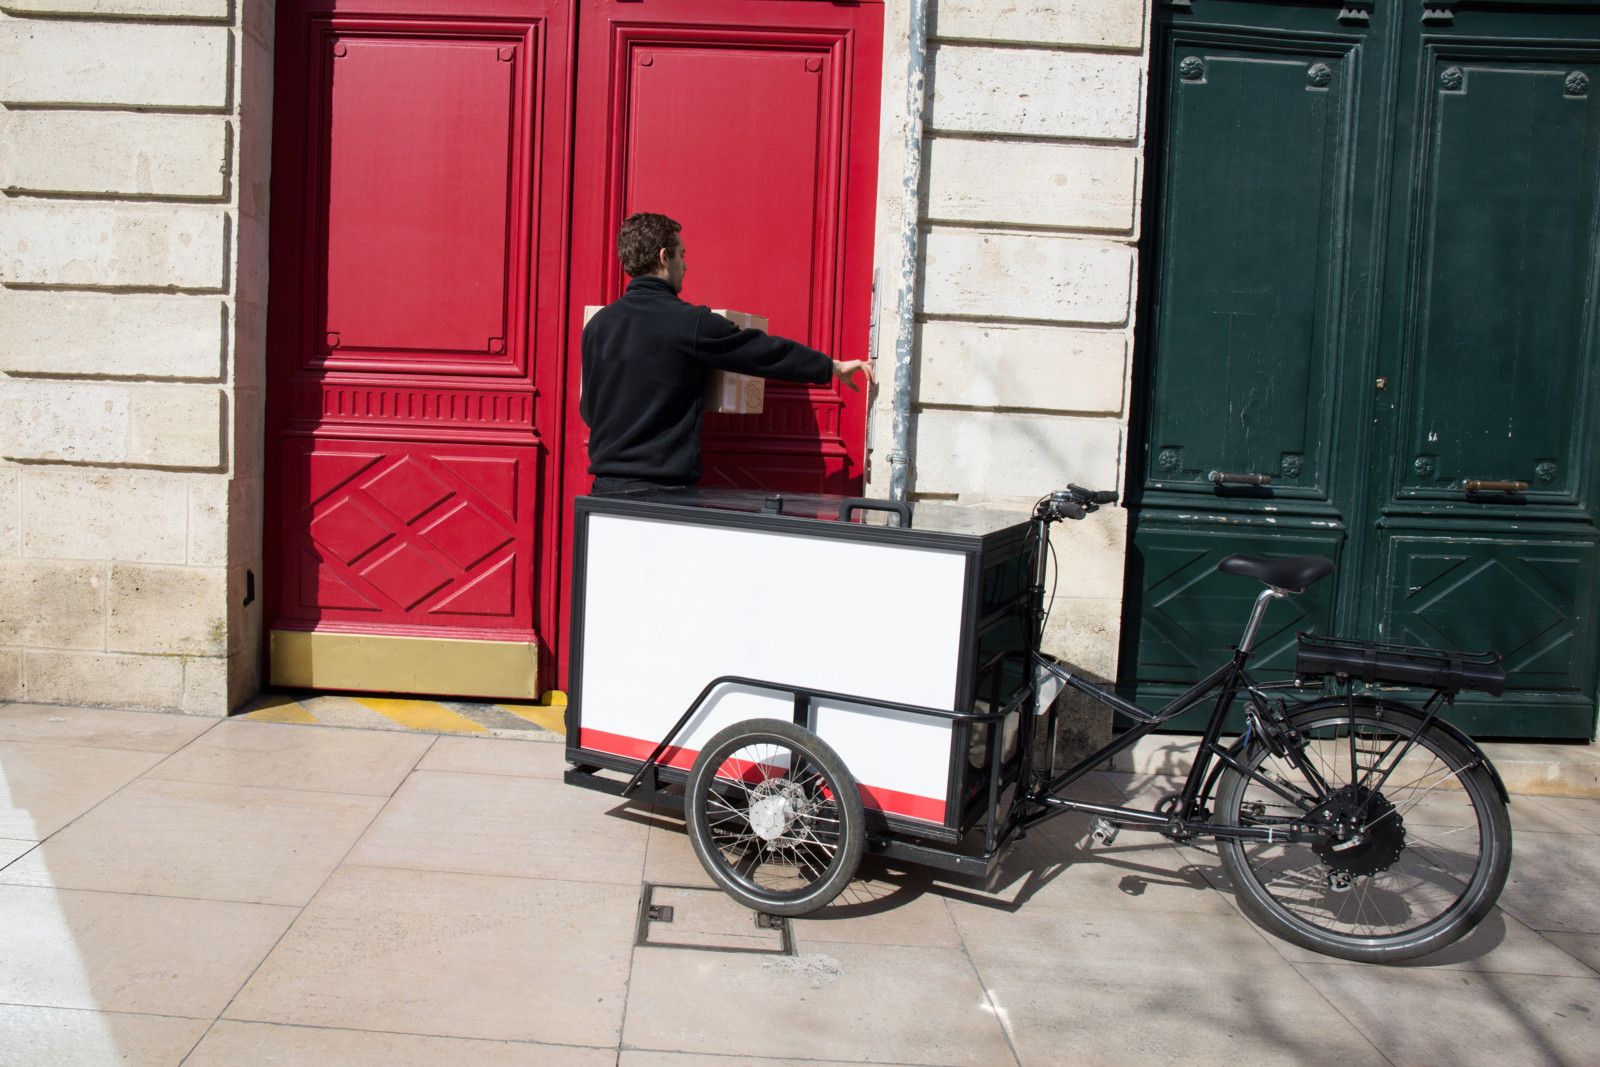 Ein Mann ist in schwarz gekleidet und steht vor einer roten Tür. Hinter ihm steht ein Lastenrad mit einer großen weißen Kiste vor dem Lenkrad.